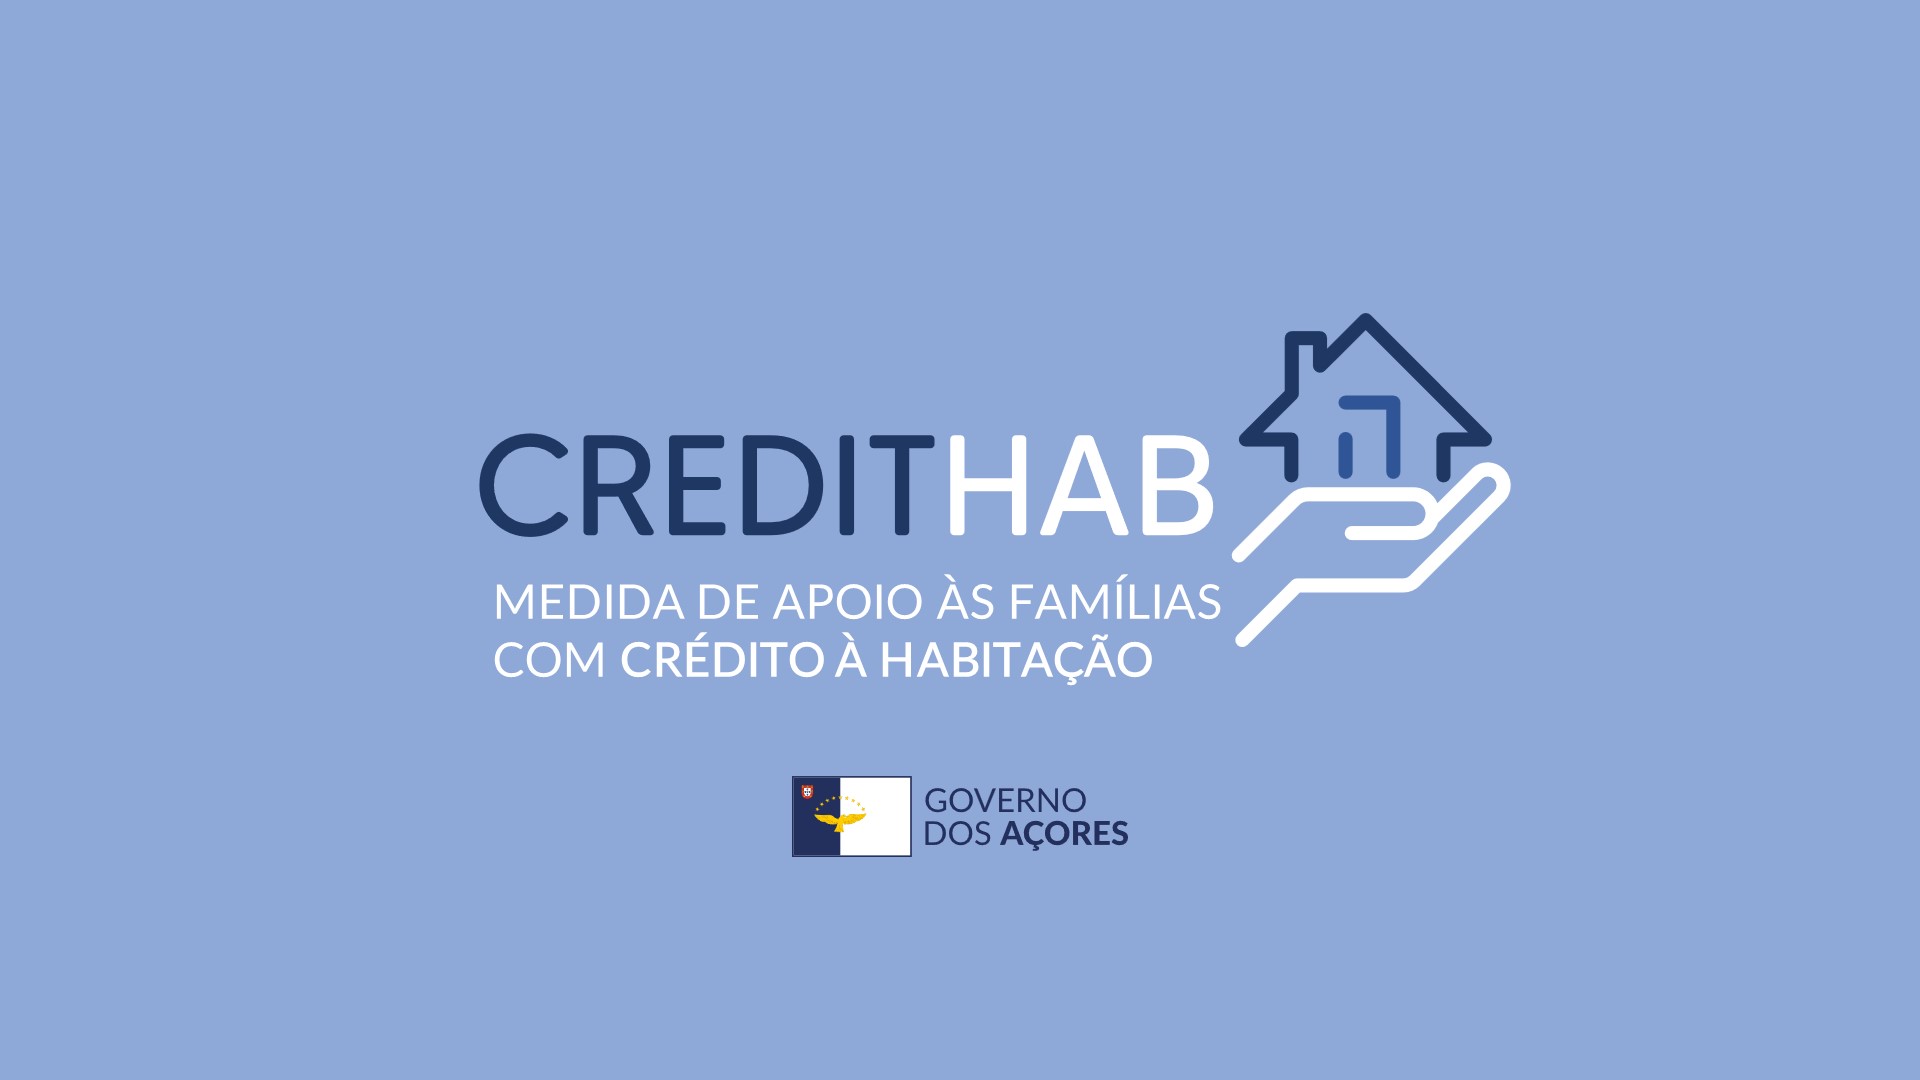 Candidaturas ao CreditHAB com início a 1 de março